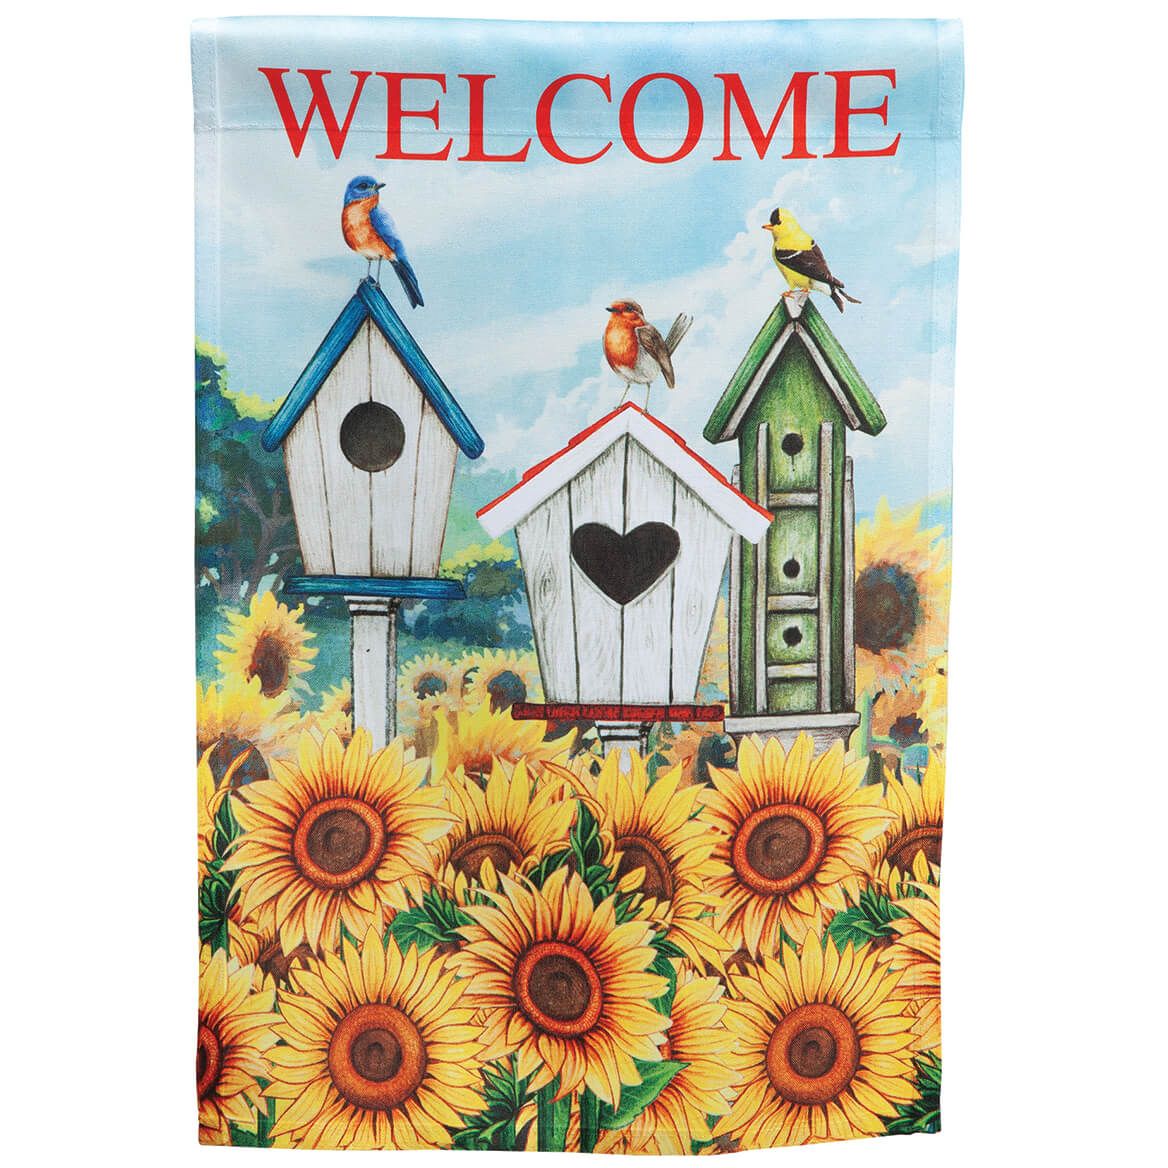 Welcome Birdhouse Garden Flag + '-' + 374109